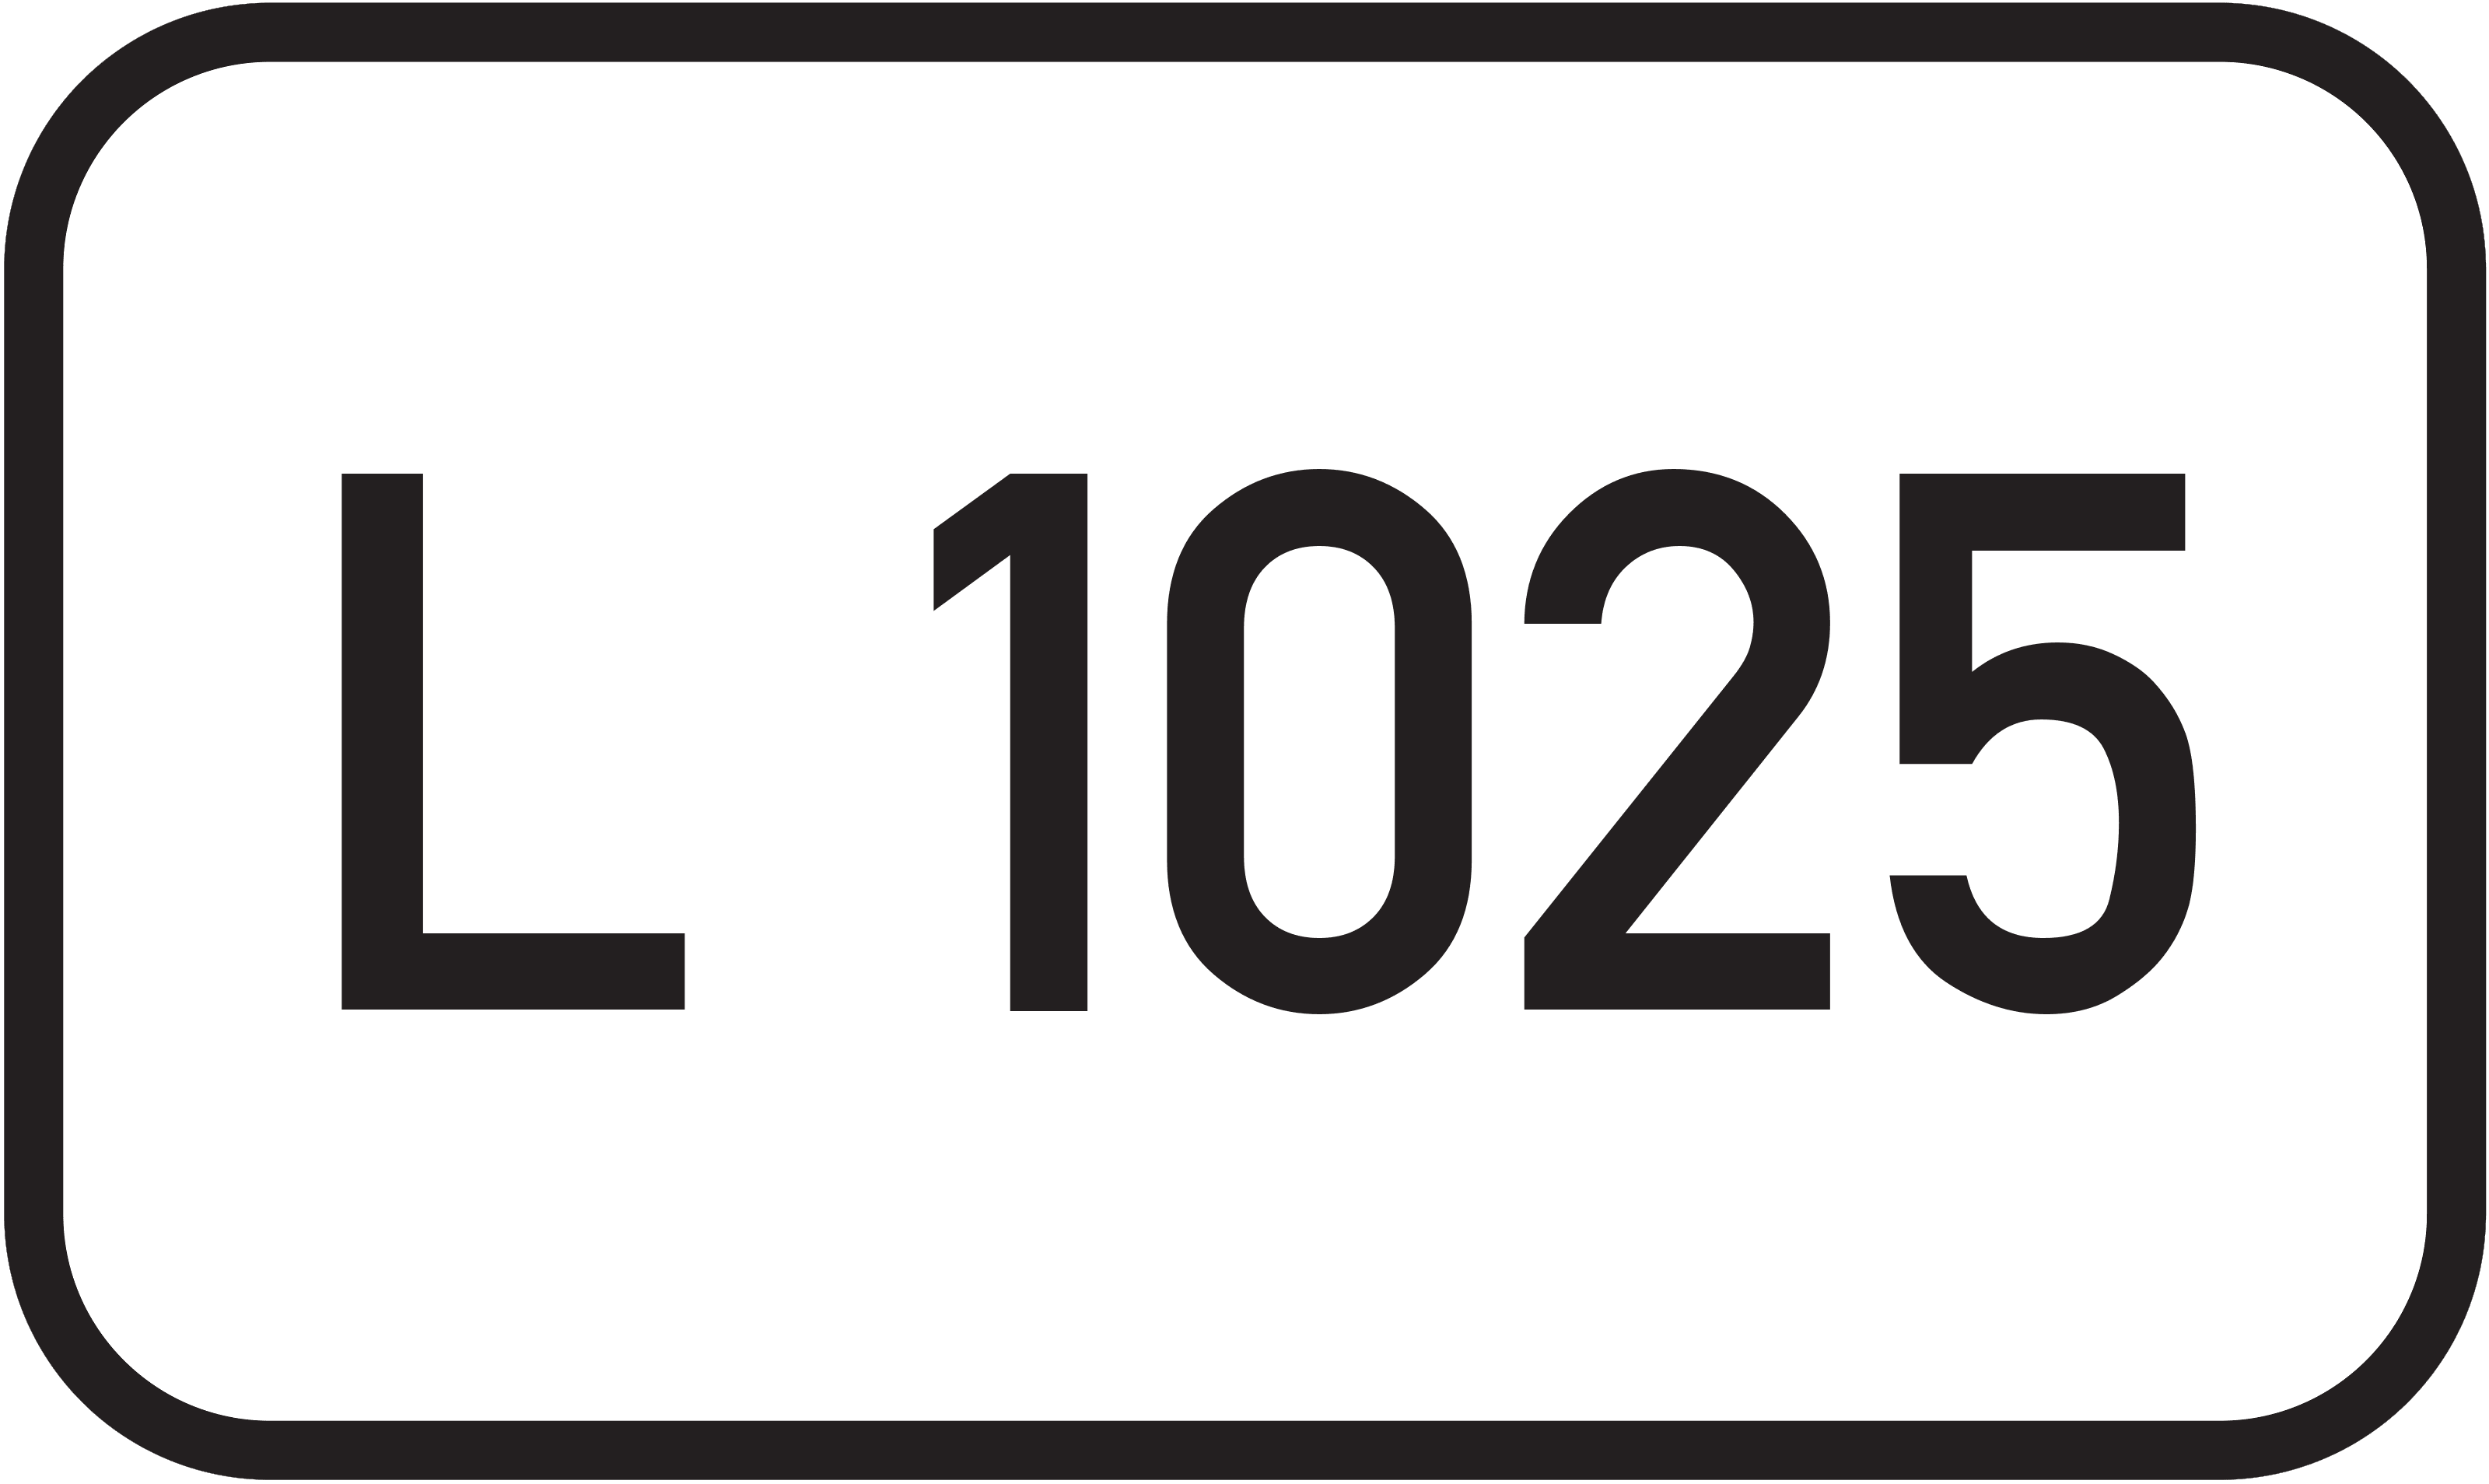 Landesstraße L 1025